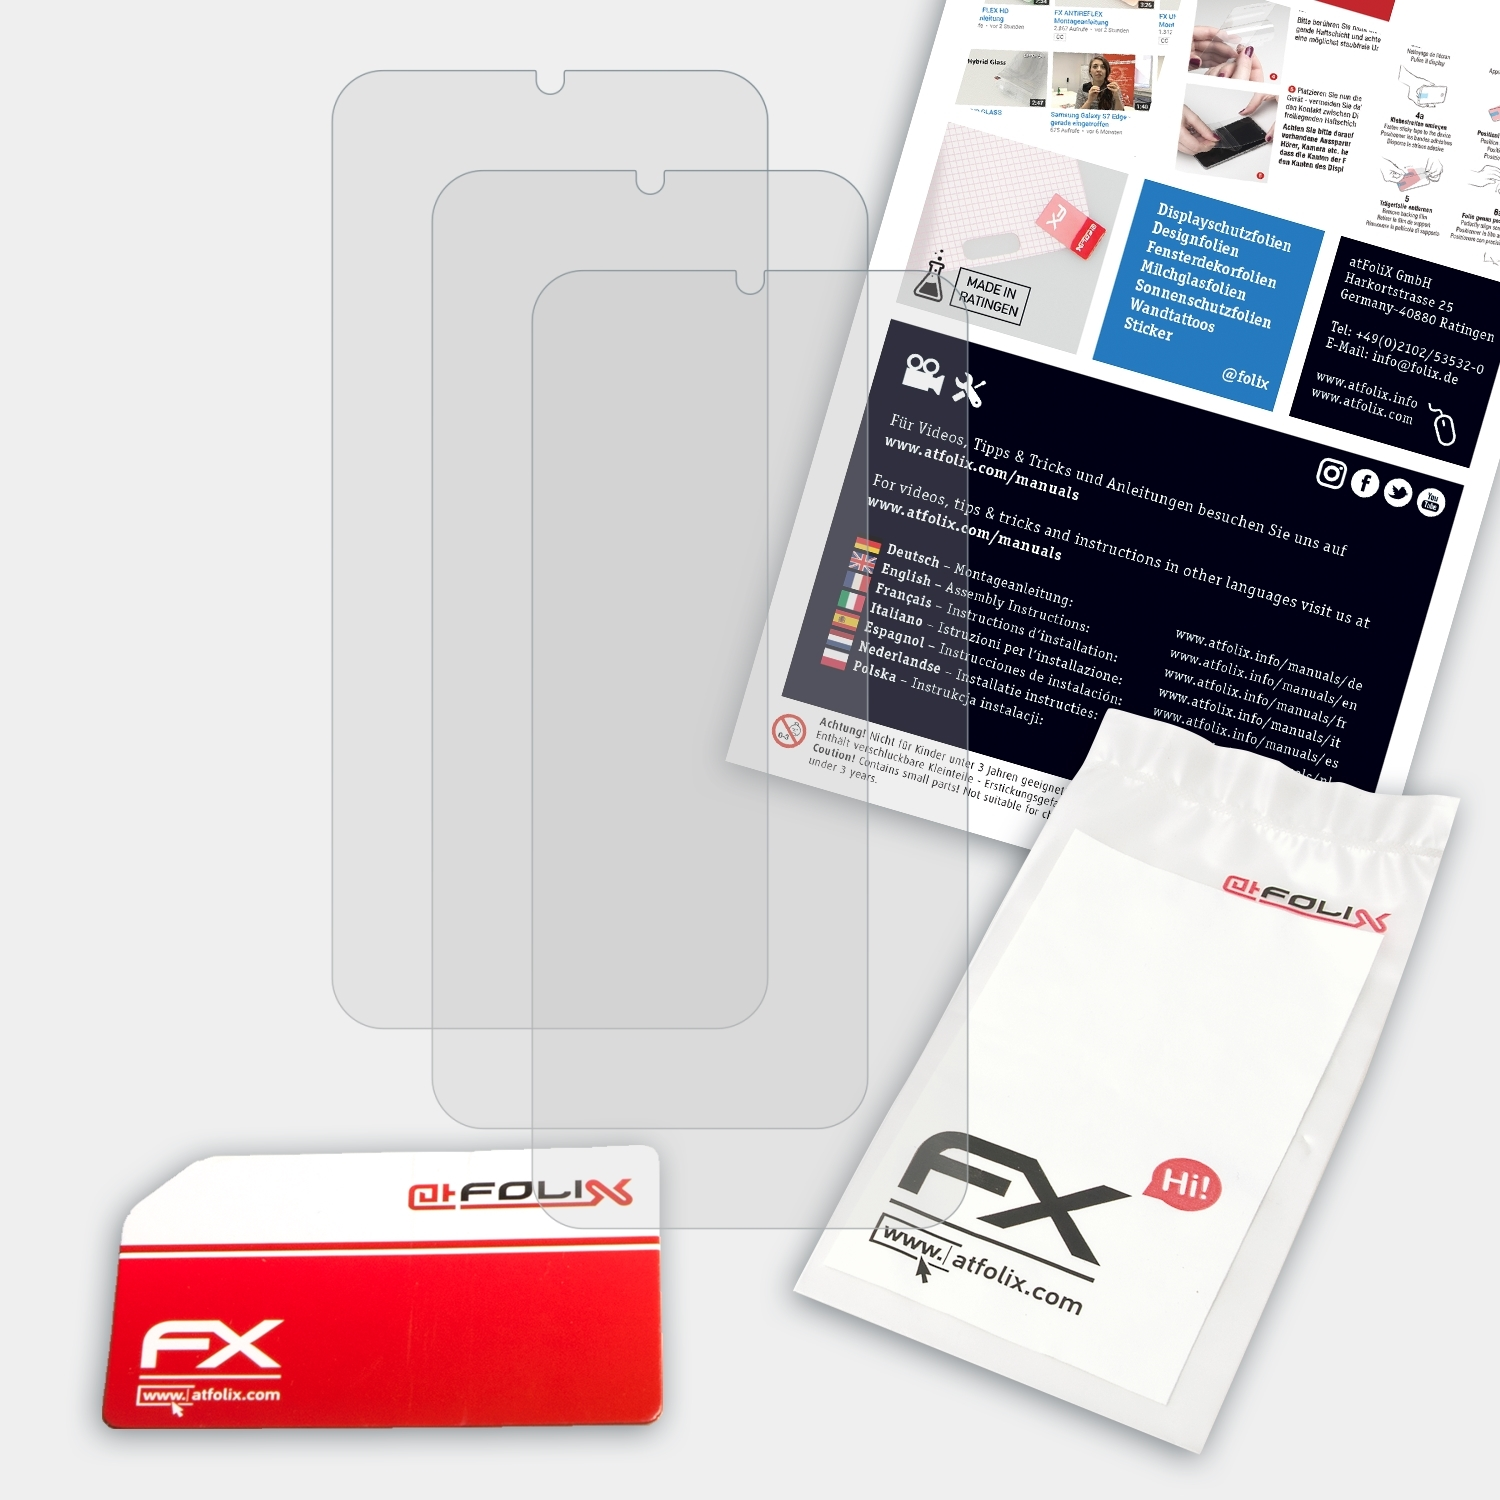 ATFOLIX 3x FX-Antireflex Displayschutz(für Tecno Pro) Camon 12